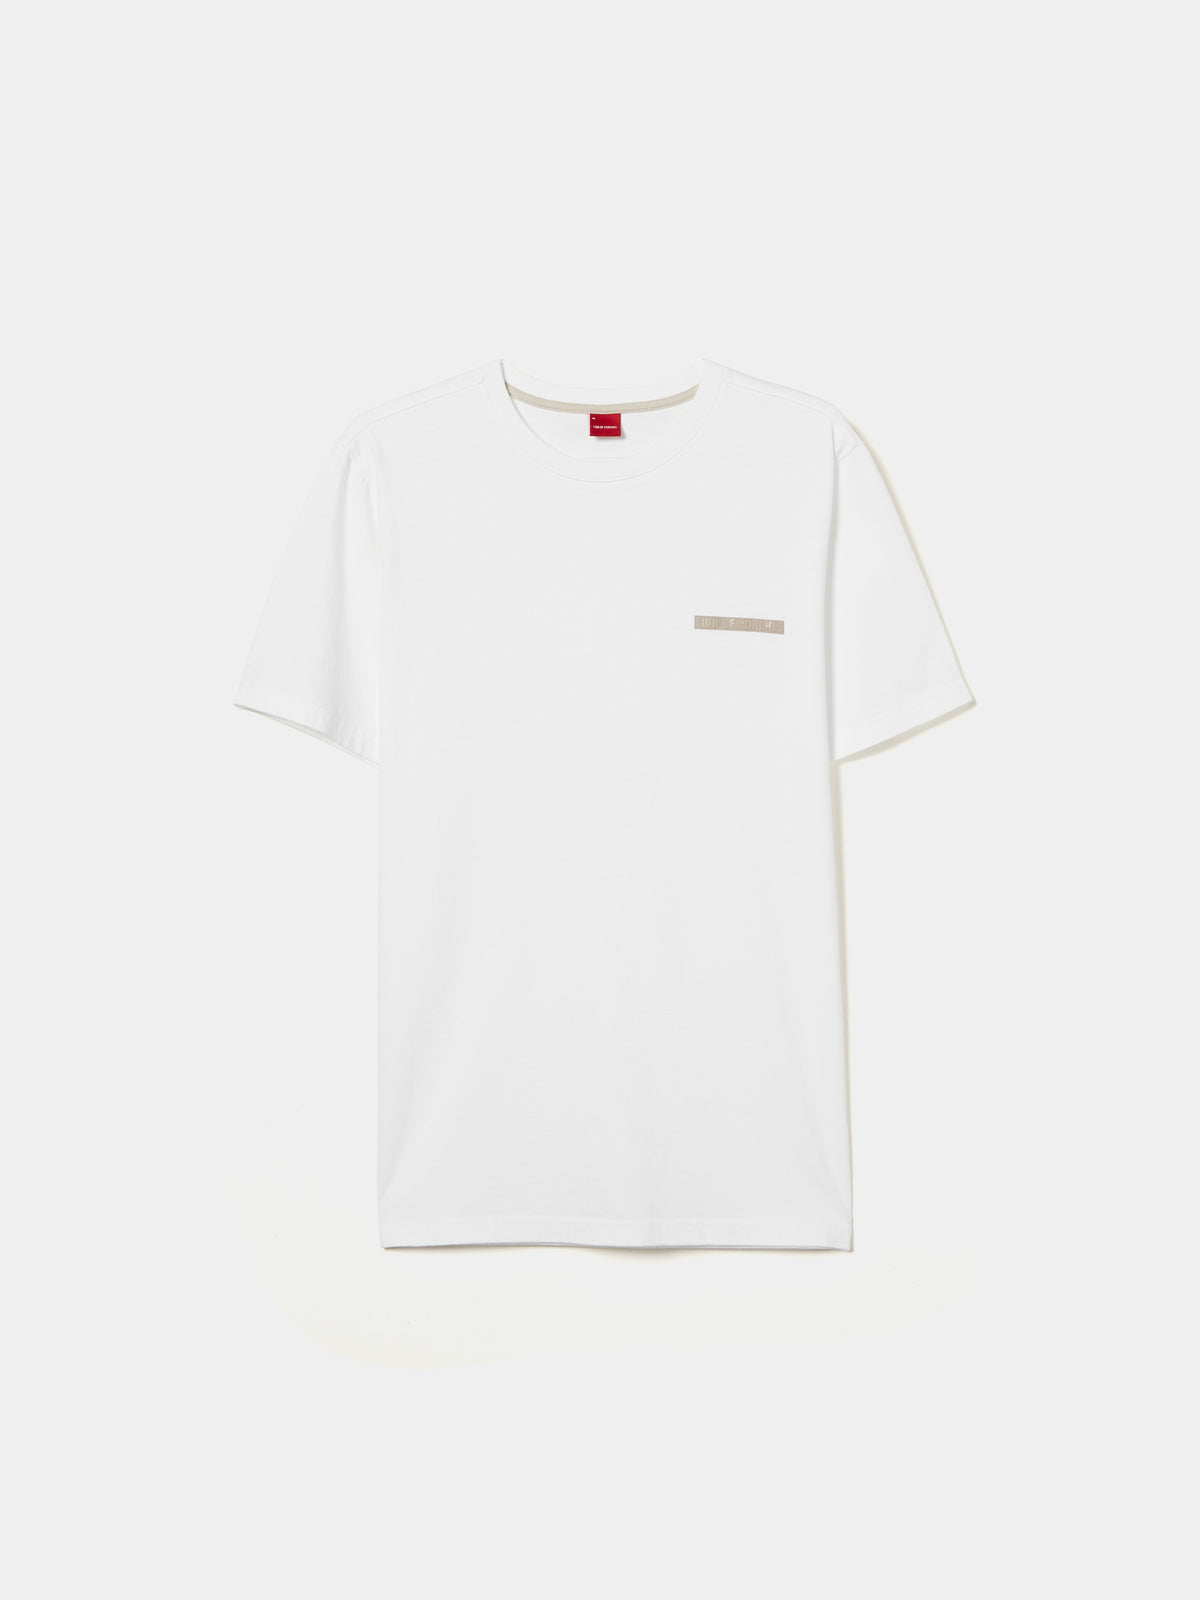 T-shirt de gola redonda 100% algodão